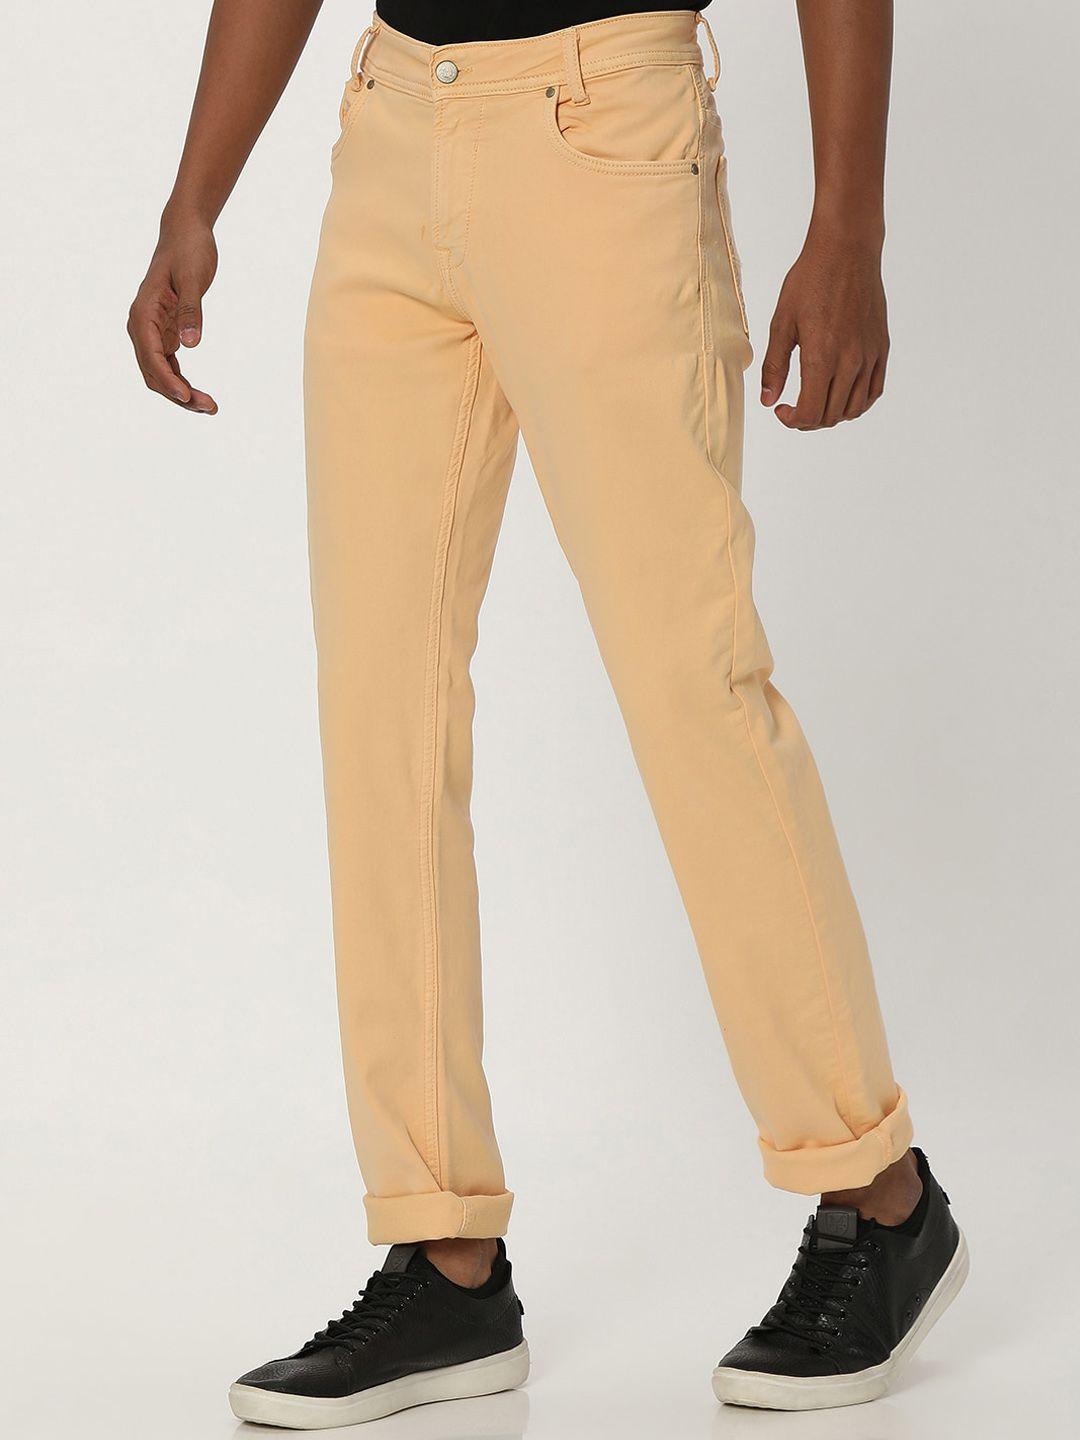 mufti-men-yellow-slim-fit-reversible-trousers